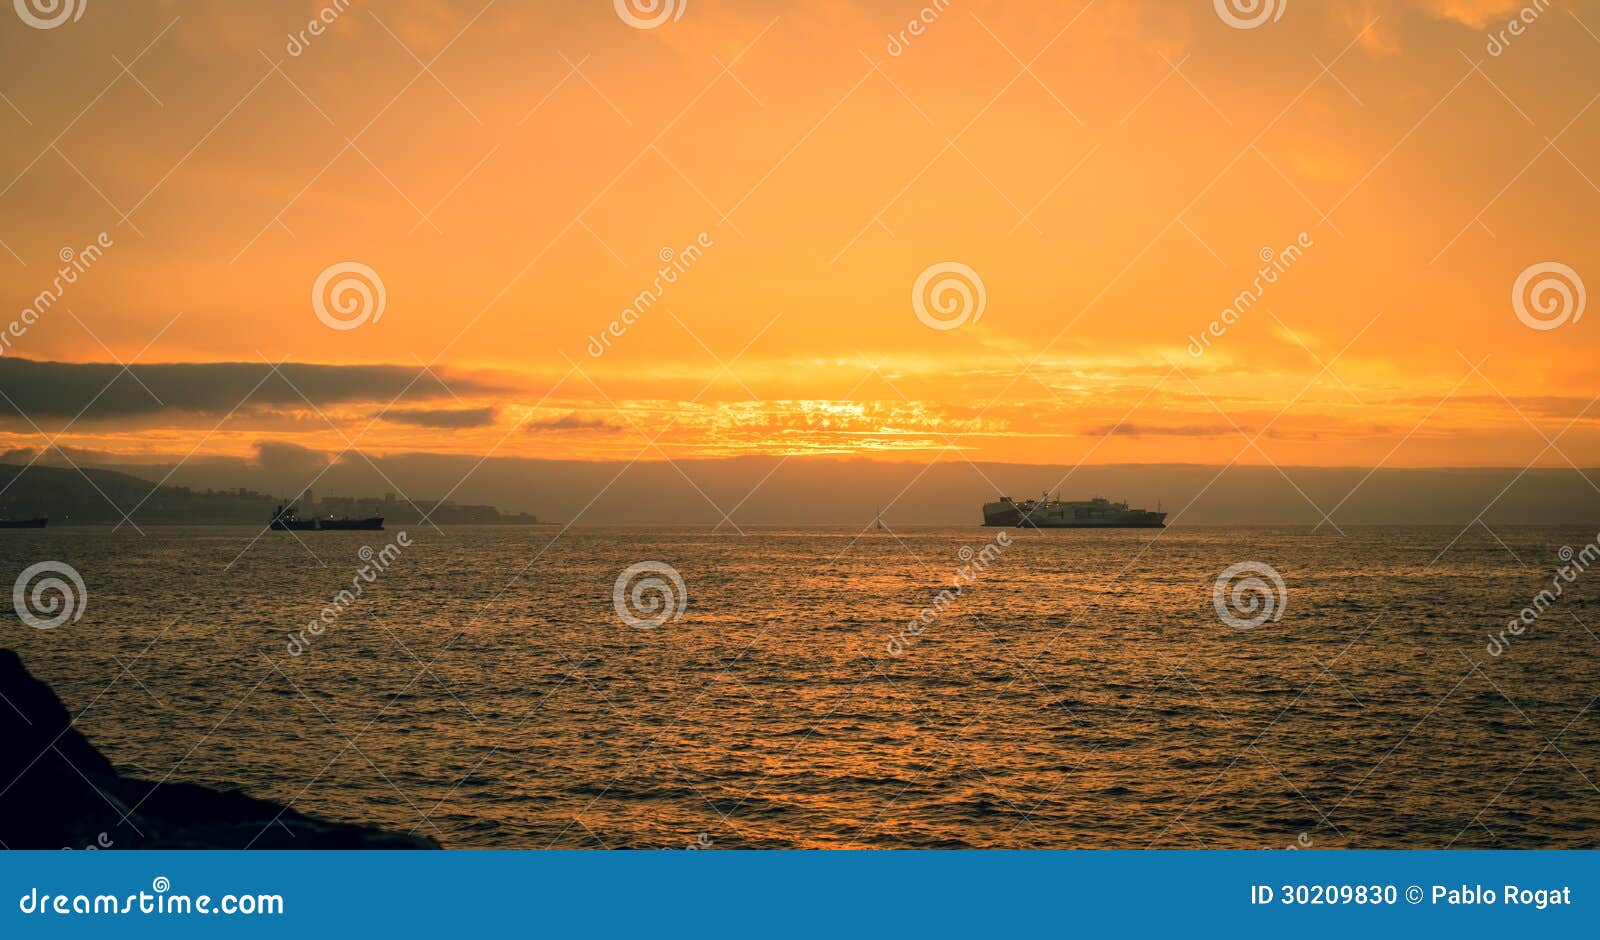 valparaiso sunset